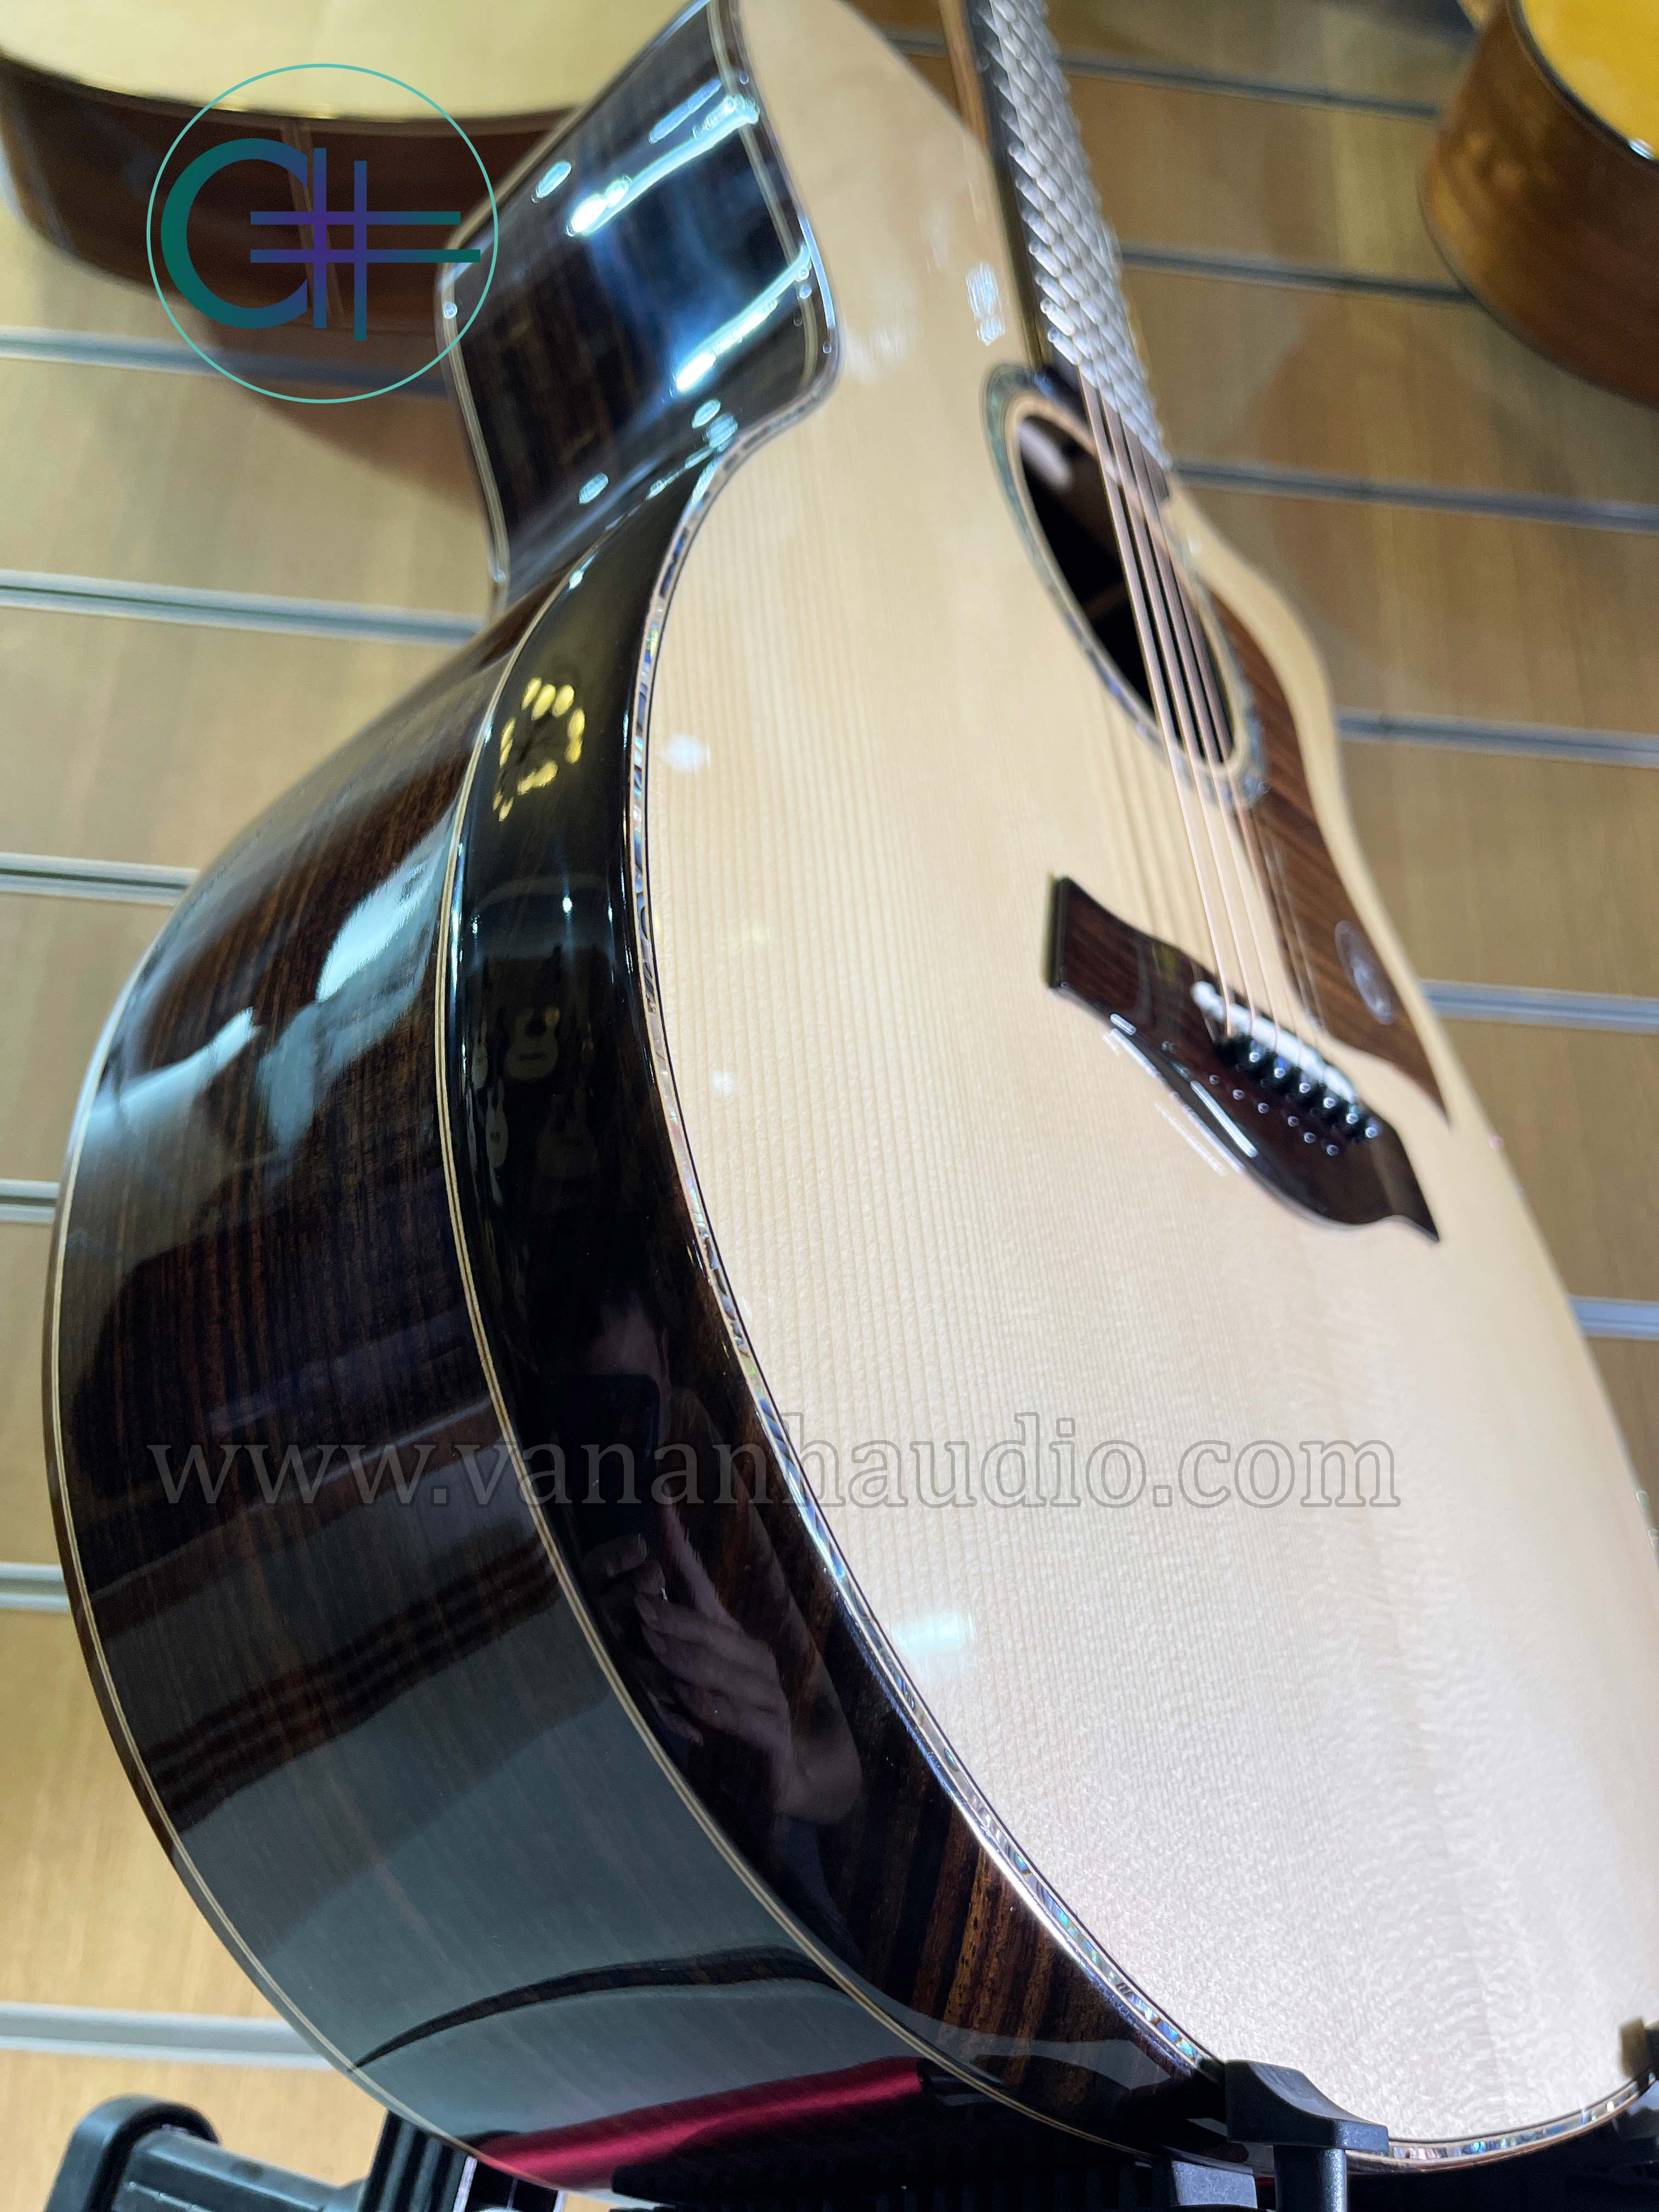 Đàn Guitar Acoustic Custom CL2022 (Khảm trai và ốc xà cừ )